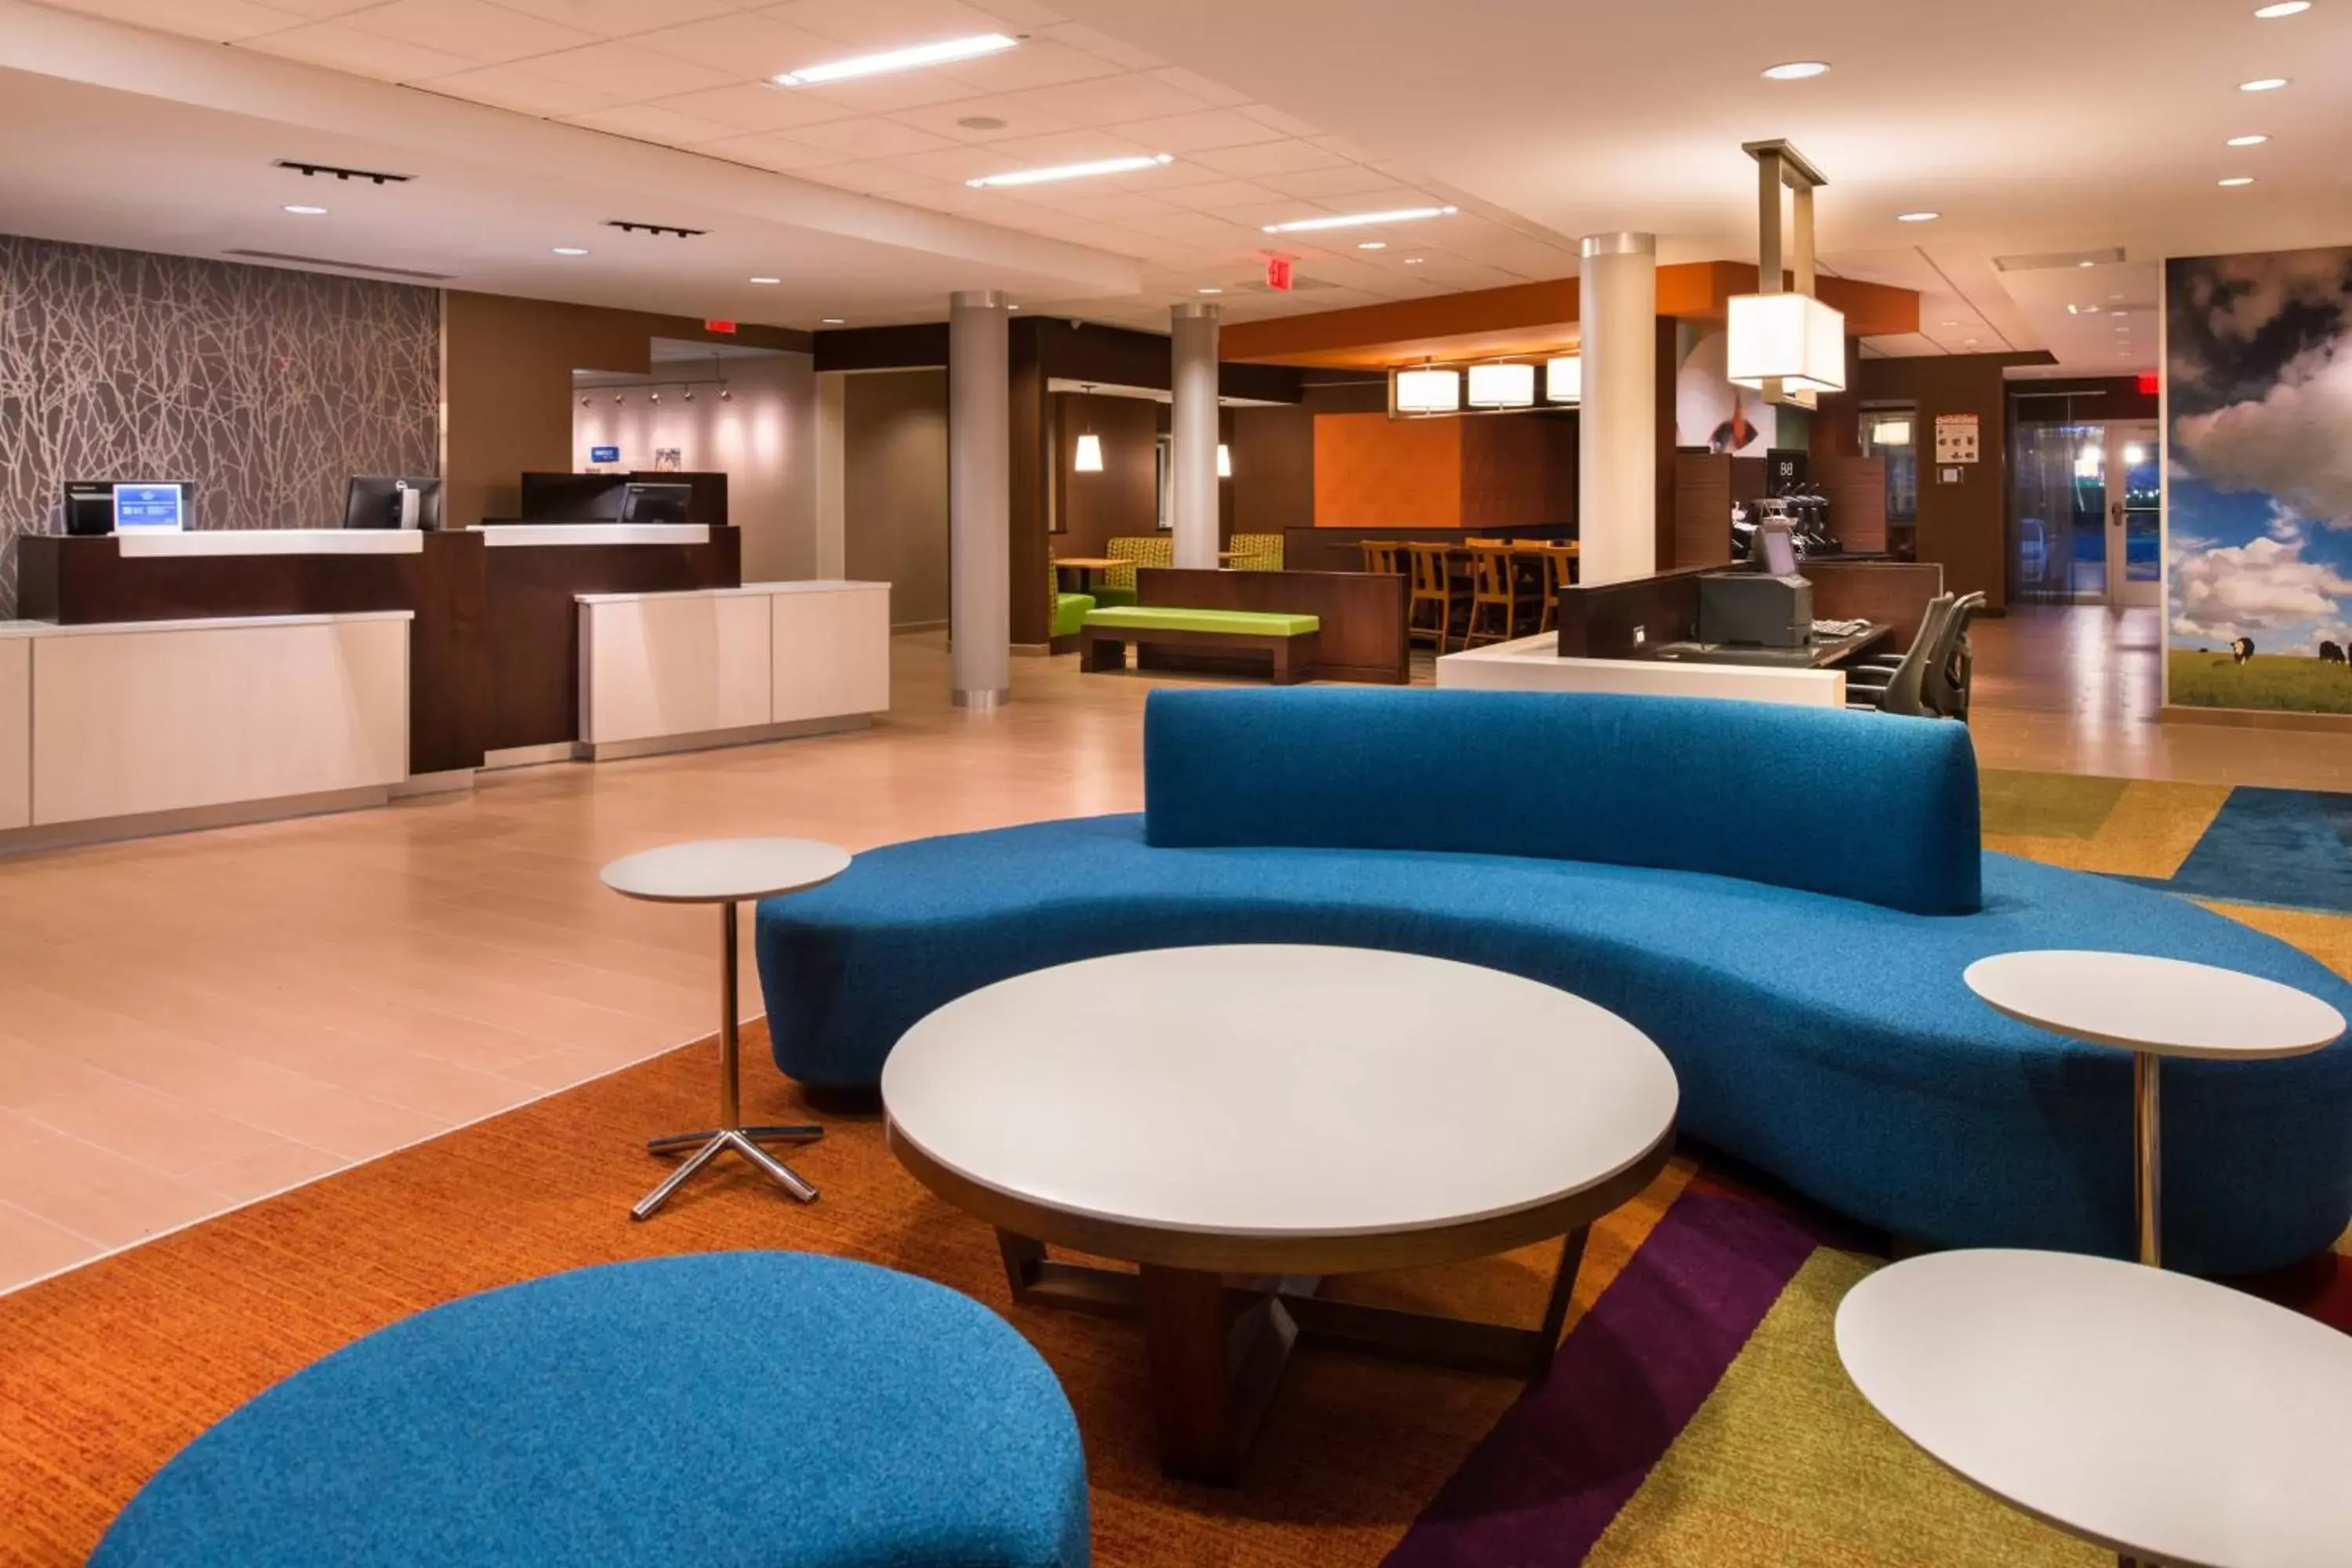 Lobby or reception, Lobby/Reception in Fairfield Inn & Suites by Marriott Utica